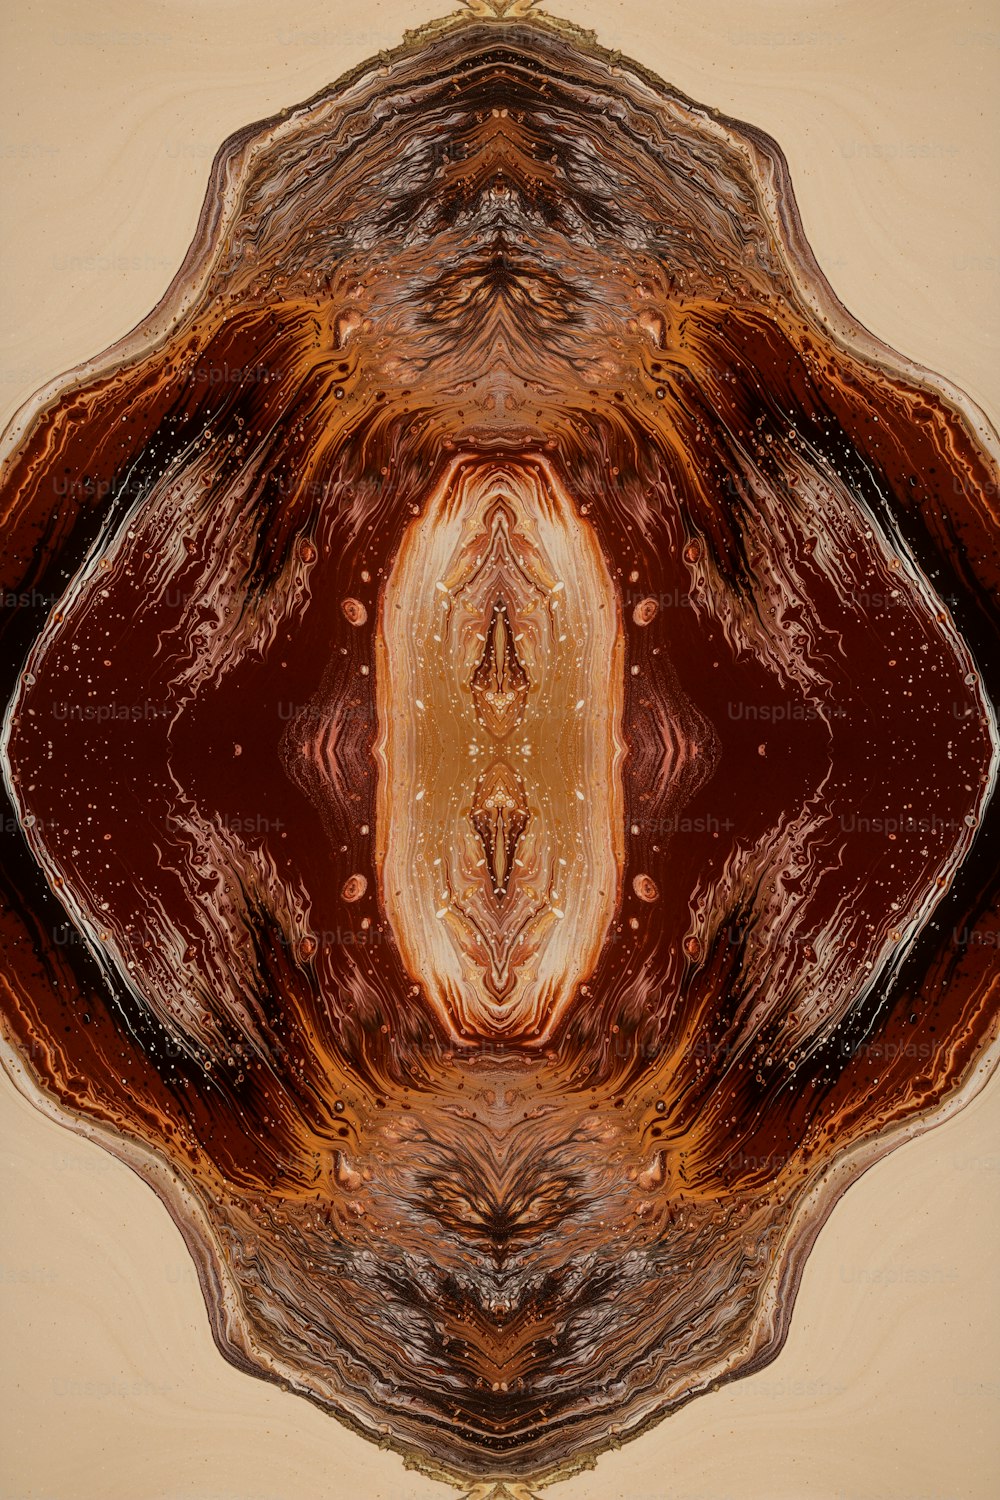 Una imagen abstracta de un objeto marrón y rojo